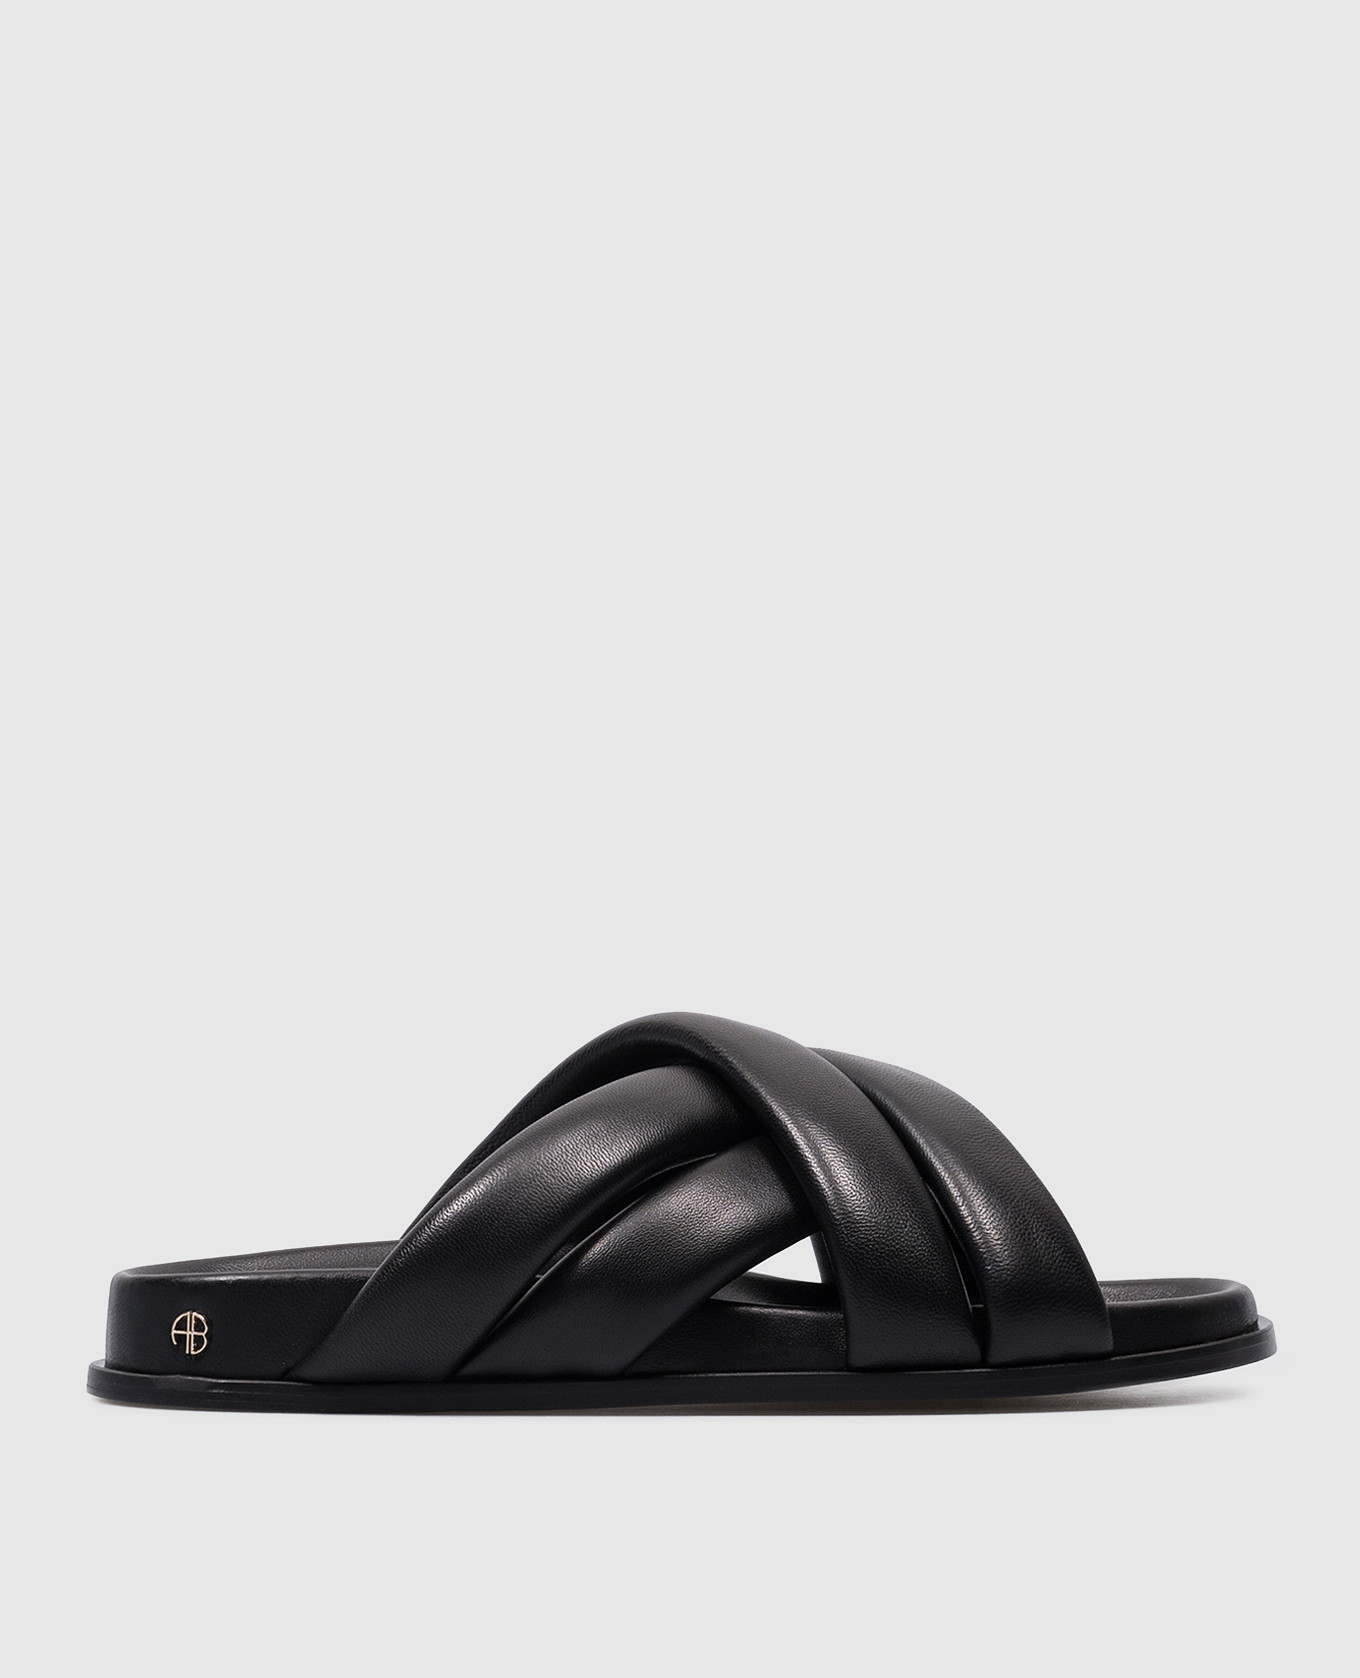 LIZZIE logo flip flops in black leather